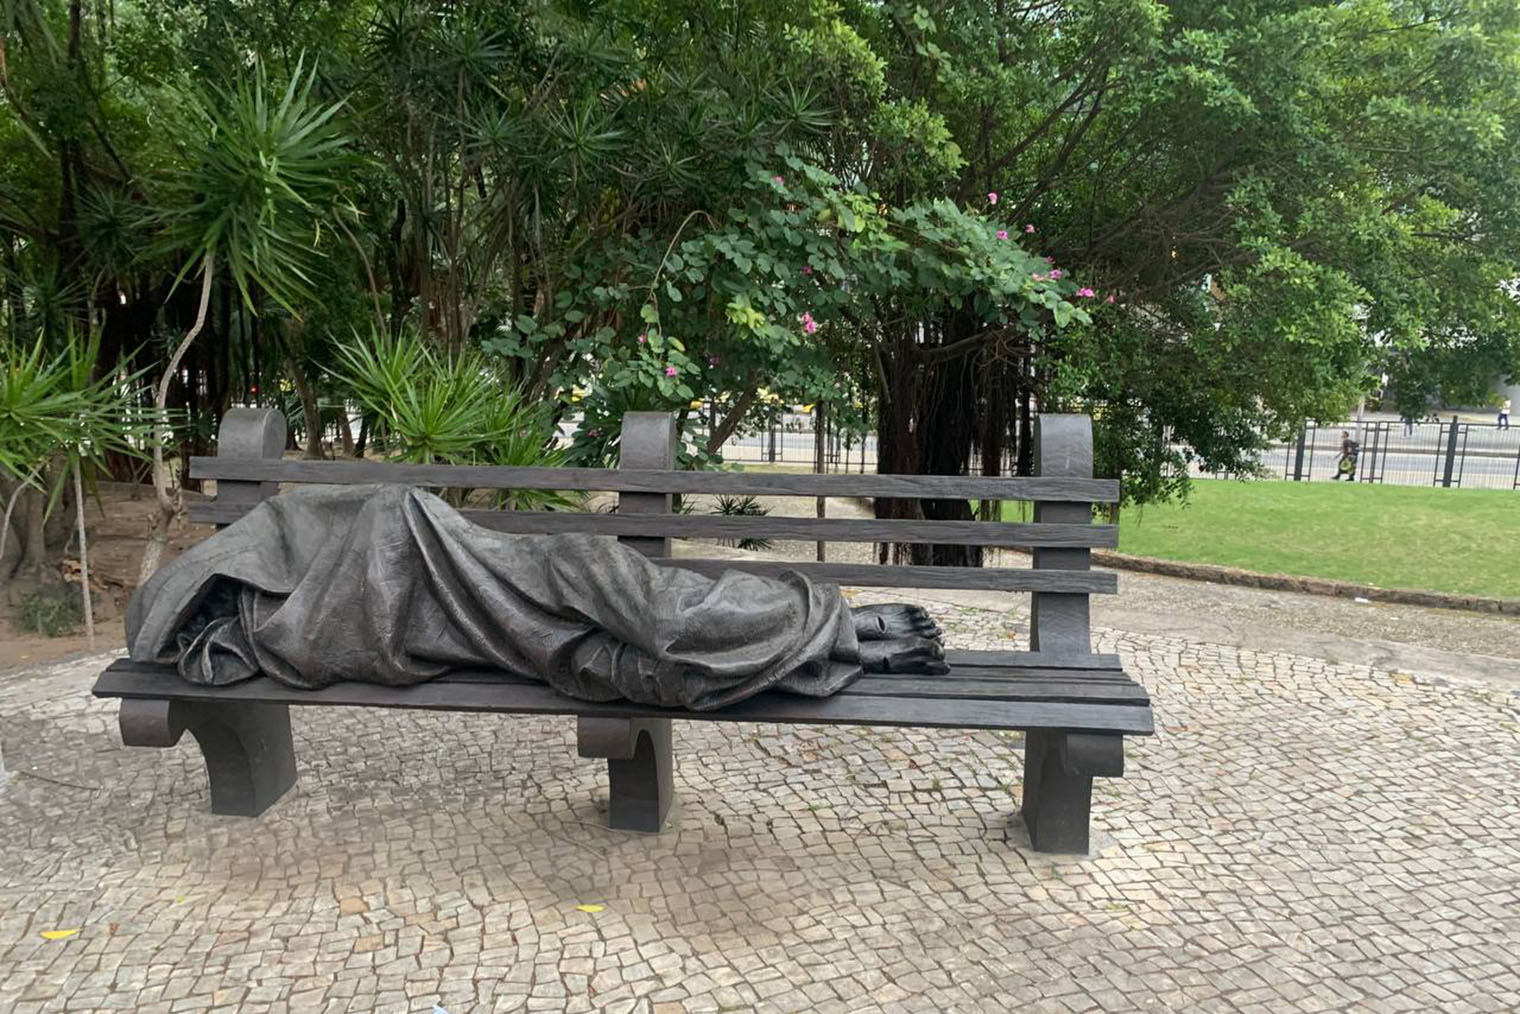 Напротив собора на одной из лавок — бронзовая фигура спящего Иисуса, закутанного в одеяло. Это памятник бездомным